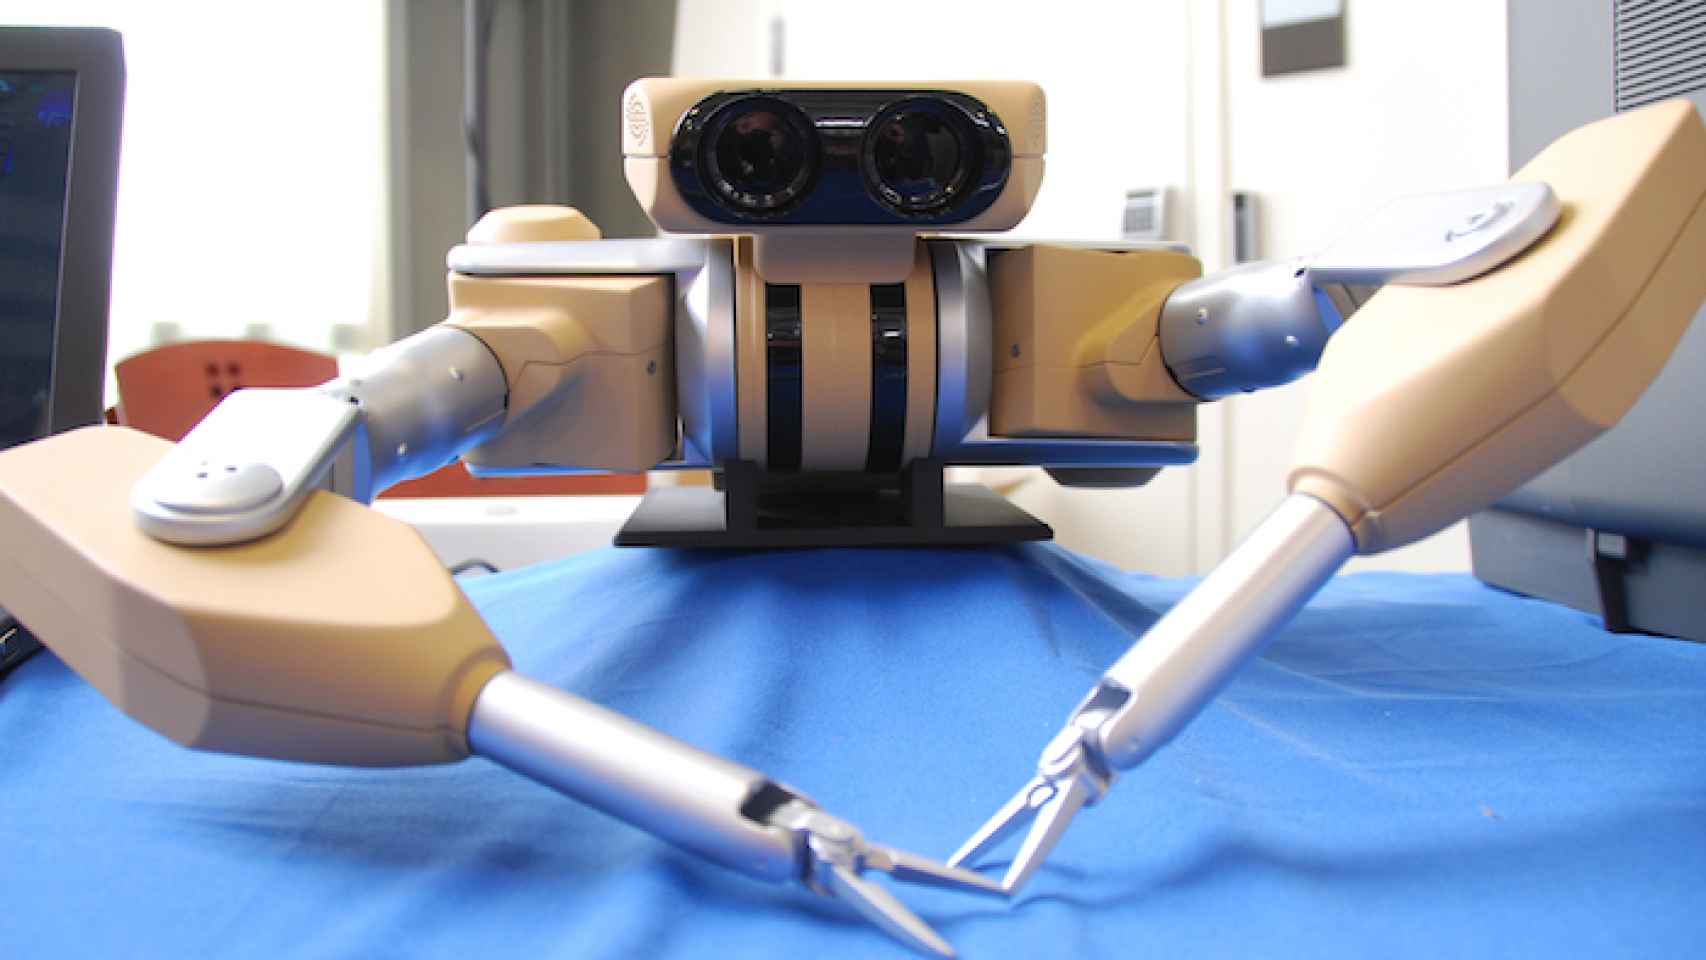 Acostúmbrate a estos robots médicos de Google porque pronto te operarán